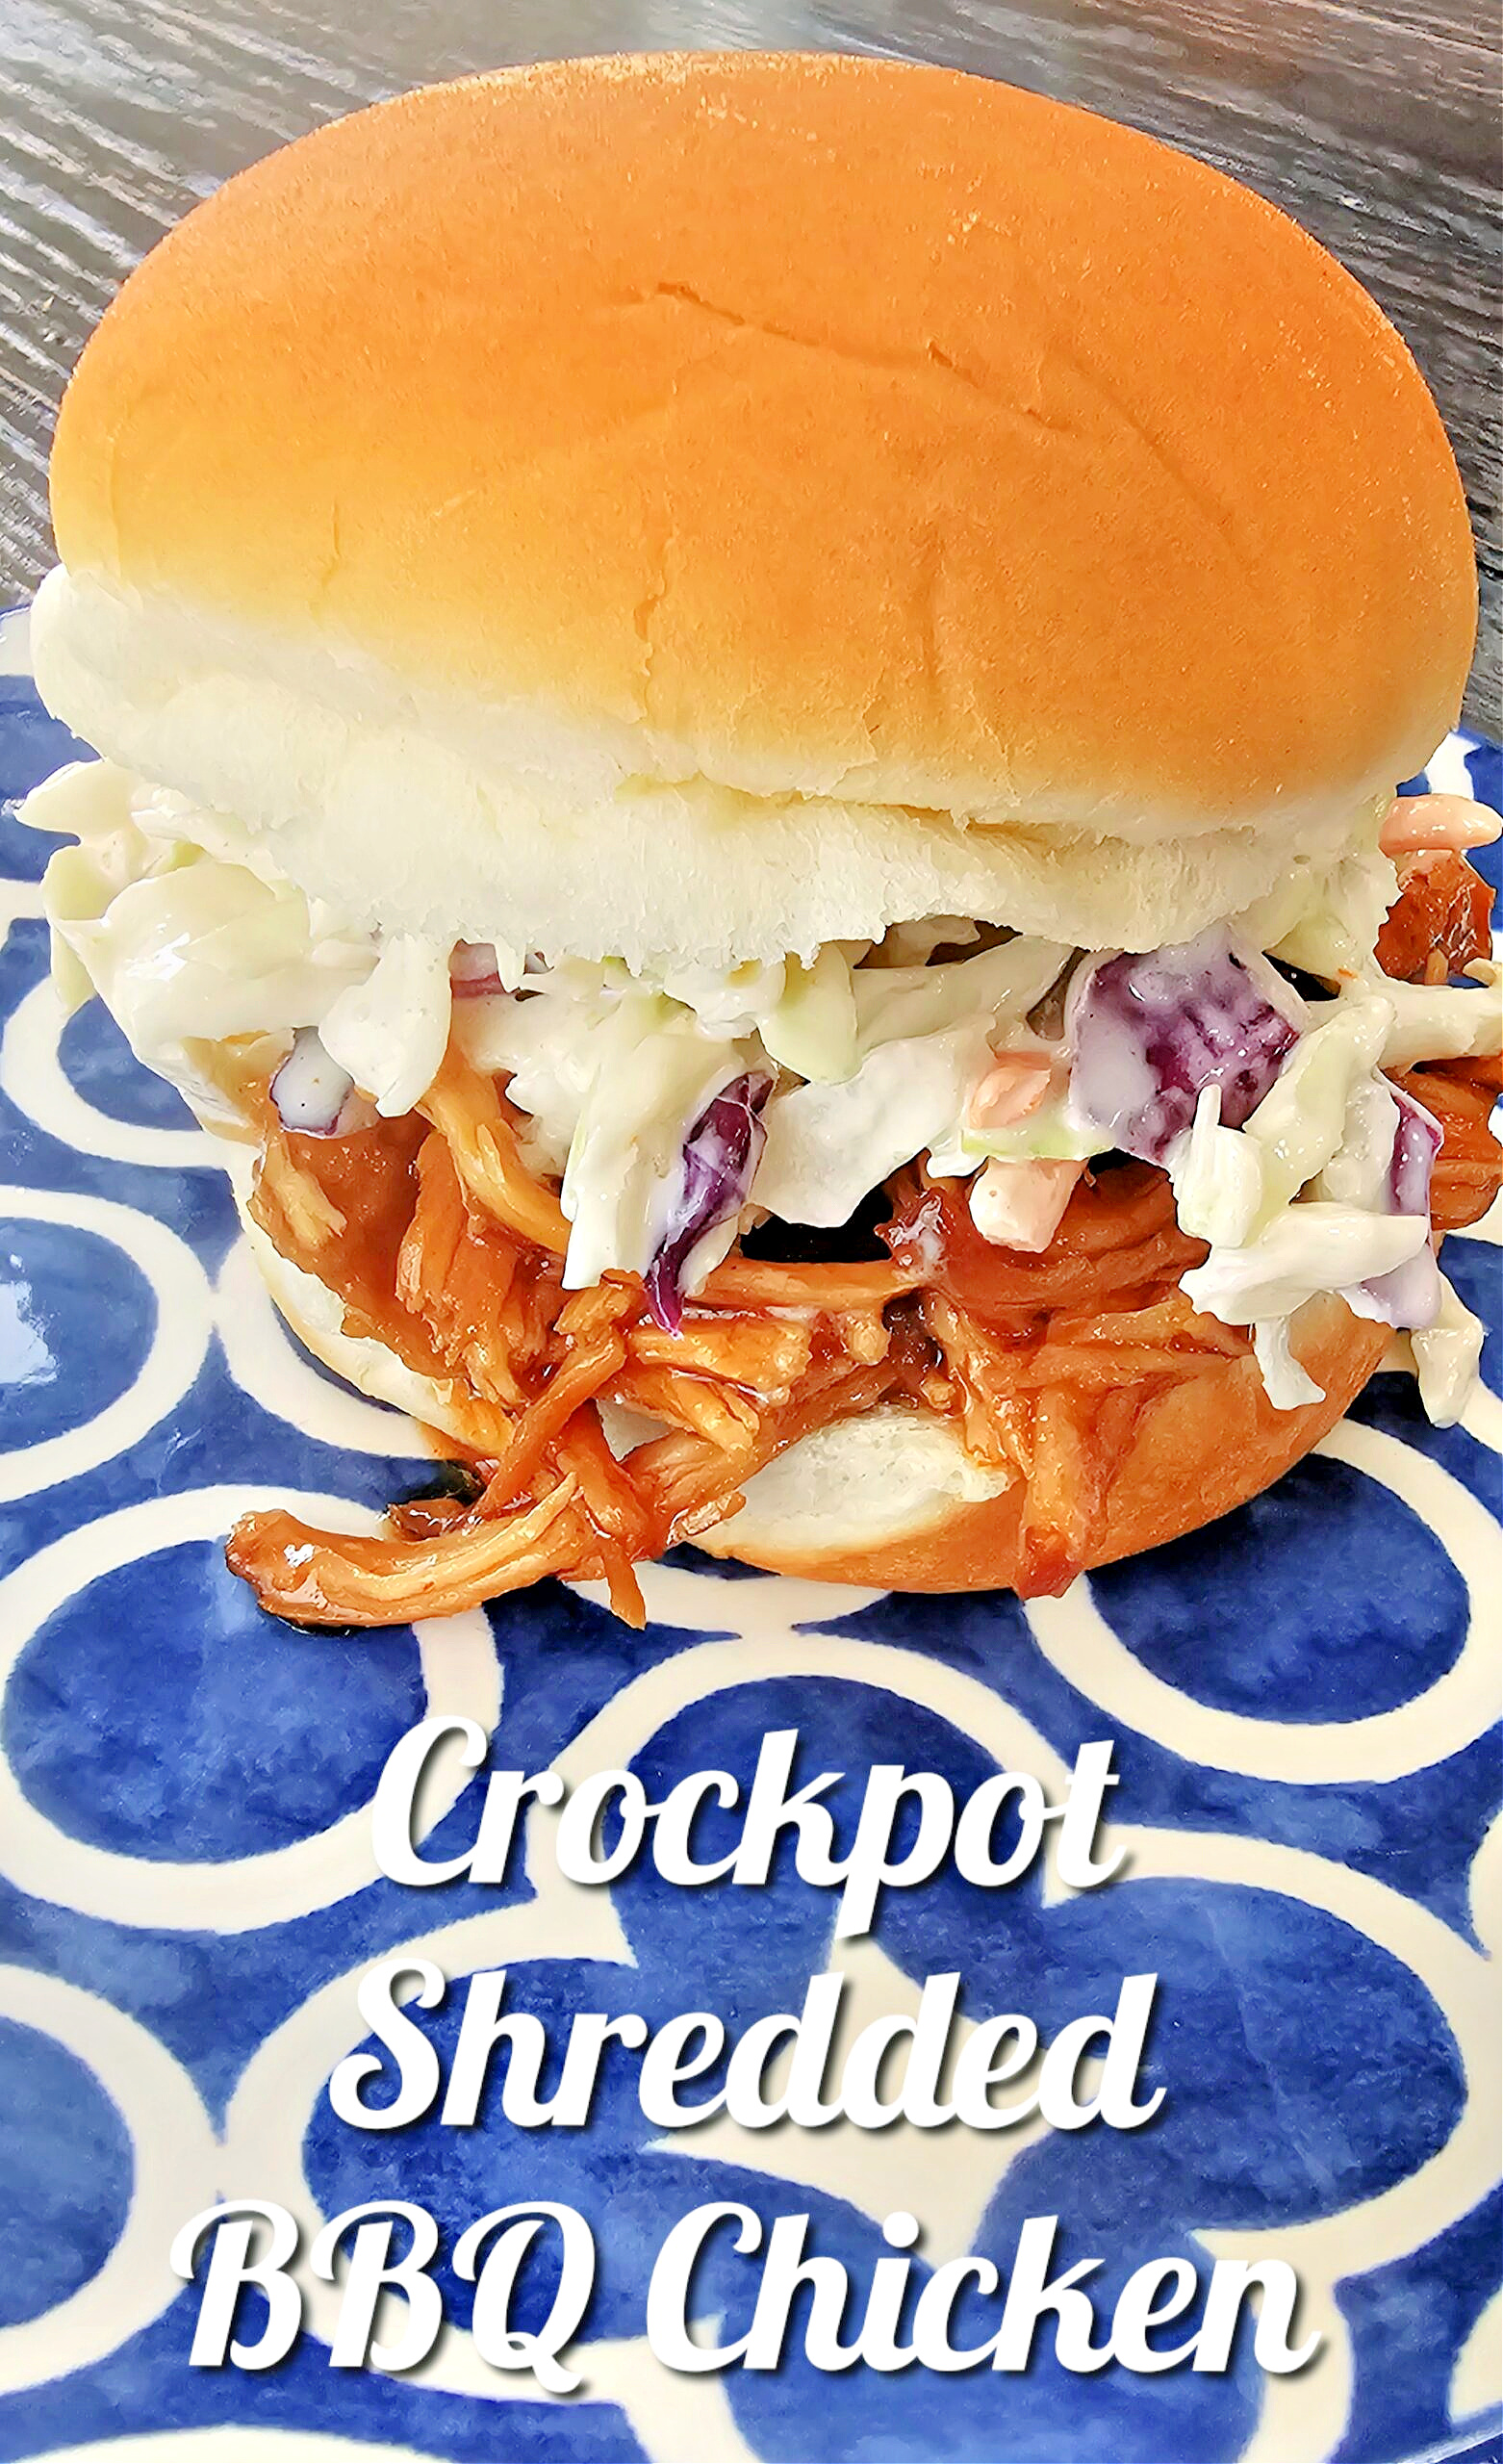 Crockpot Shredded BBQ Chicken #chicken #bbq #sandwich #crockpot #slowcooker #dinner #onepanmeal